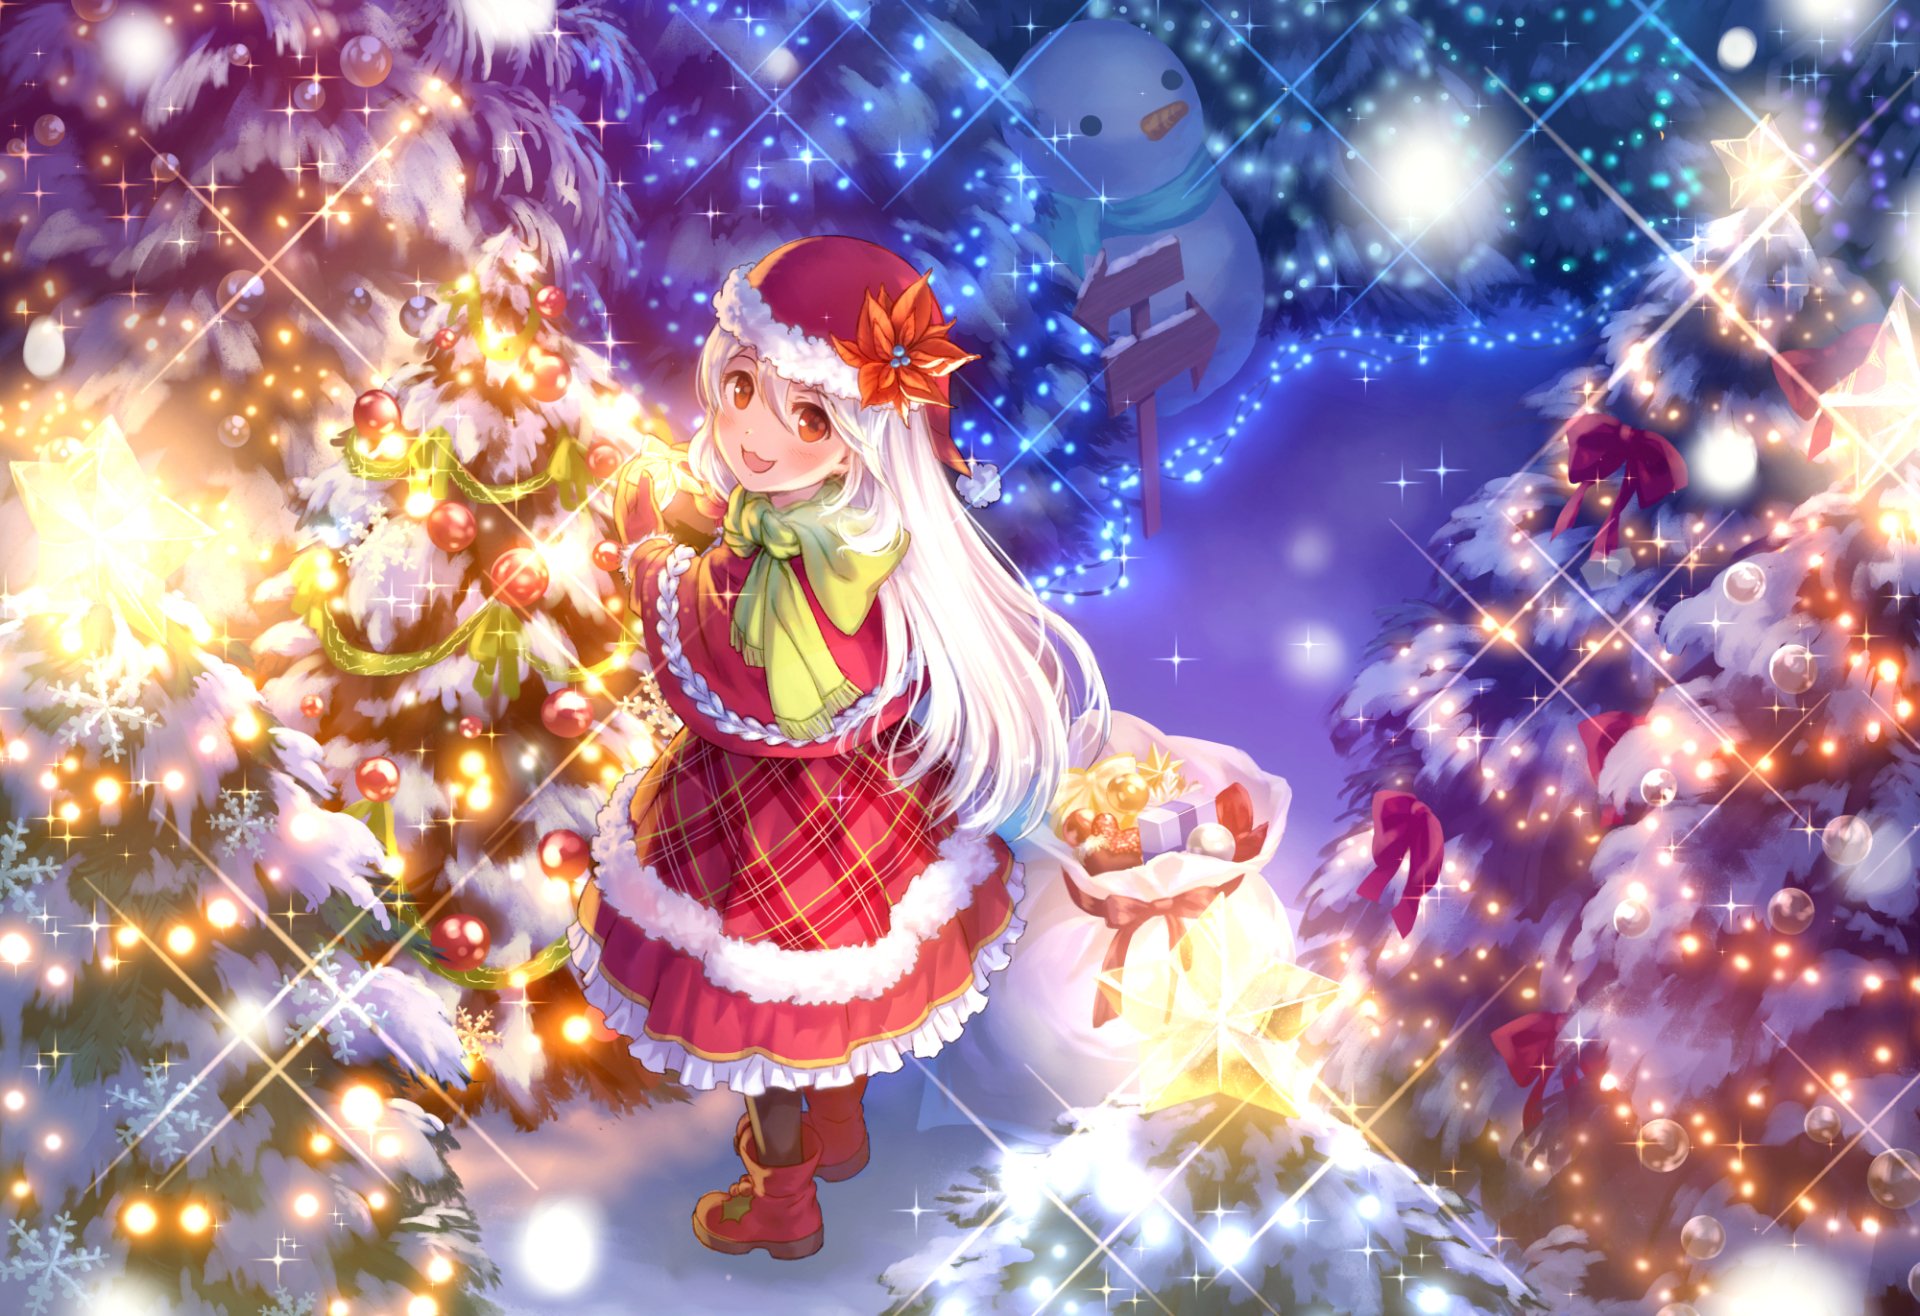 Hãy tận hưởng không khí lễ hội Noel với bức tranh nền anime Maruhide. Với những gam màu tươi sáng, những hình ảnh đầy ma mị và kỳ ảo sẽ không chỉ tạo được ấn tượng mạnh mẽ tới người xem, mà còn mang lại những cảm xúc thật là tuyệt vời.